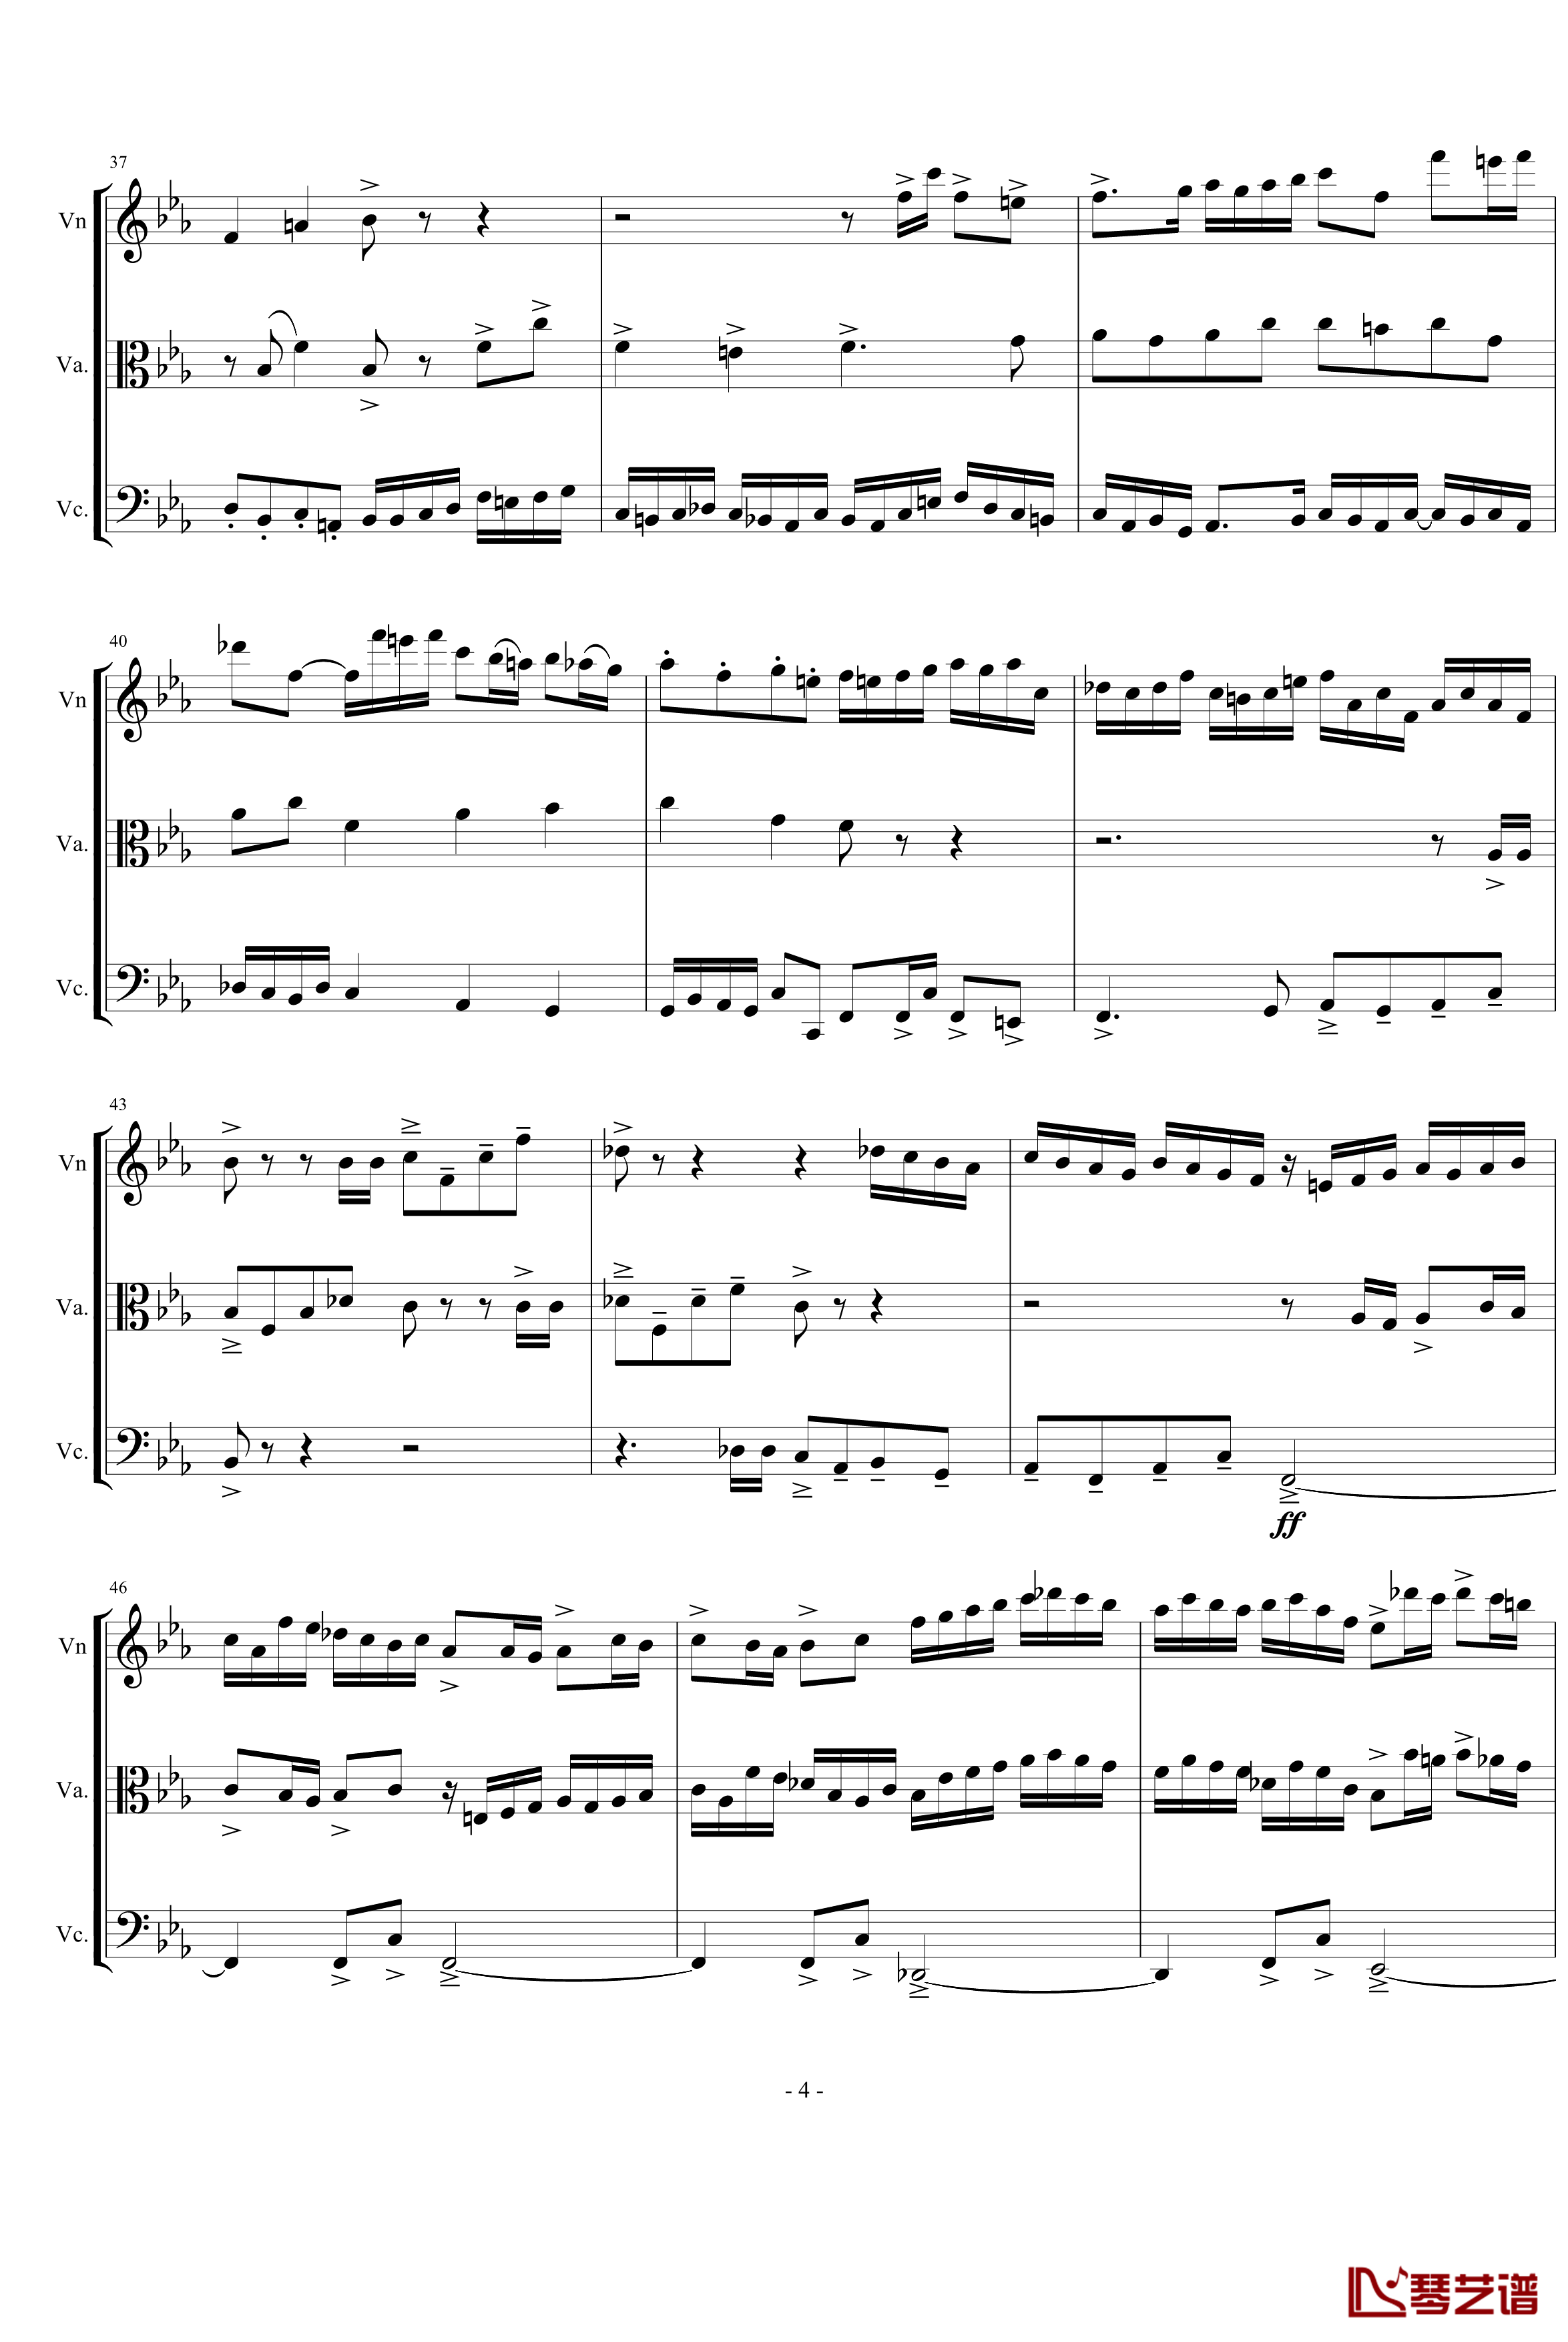 三声部赋格钢琴谱-为弦乐三重奏而作-琴辉4